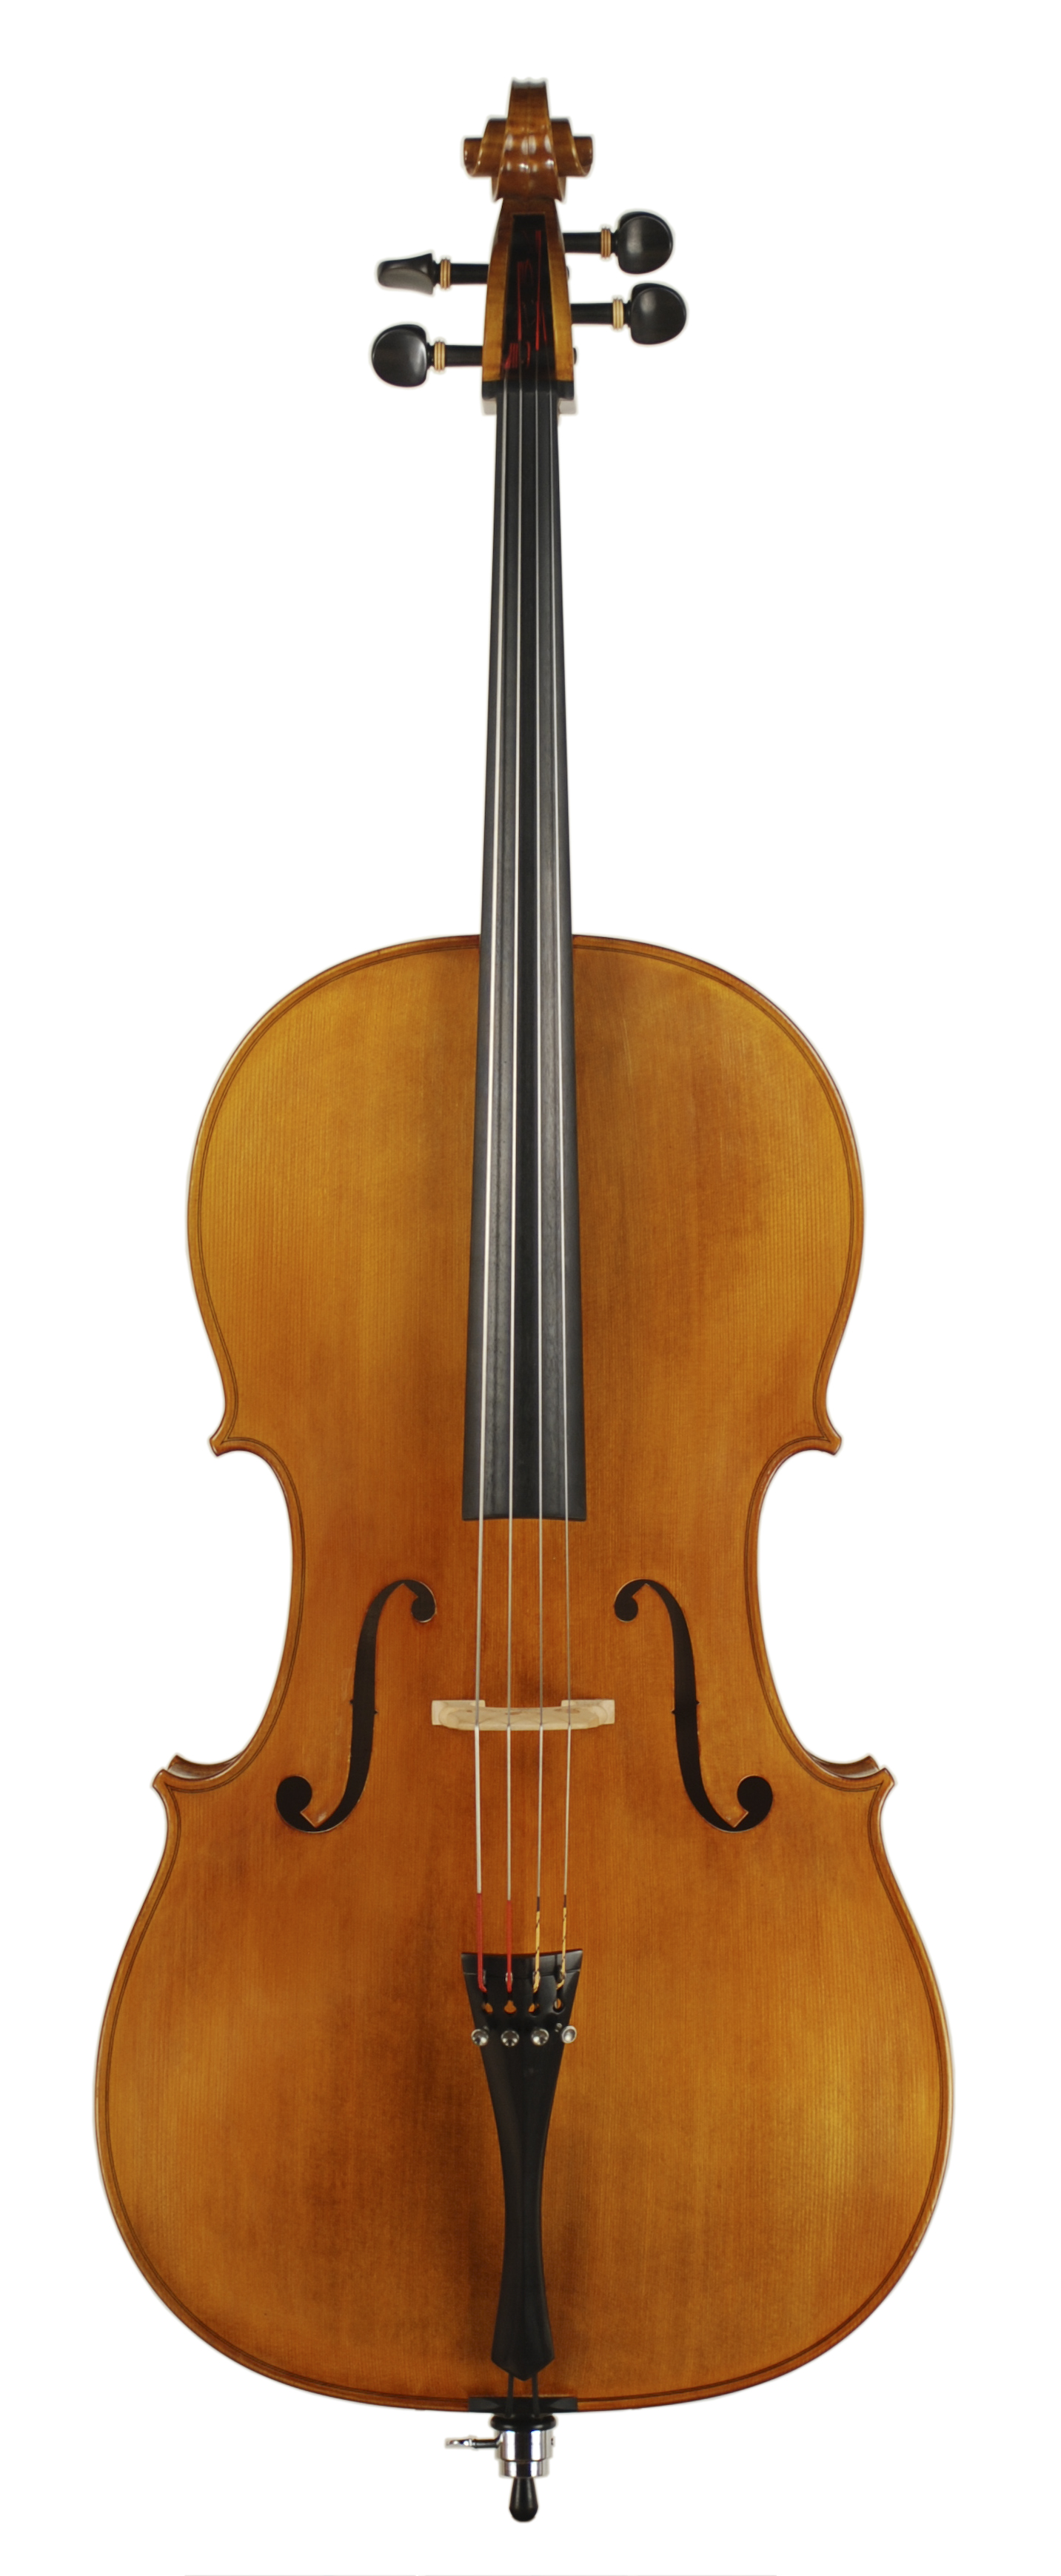 Achat violoncelle 4/4, 7/8 et luthier